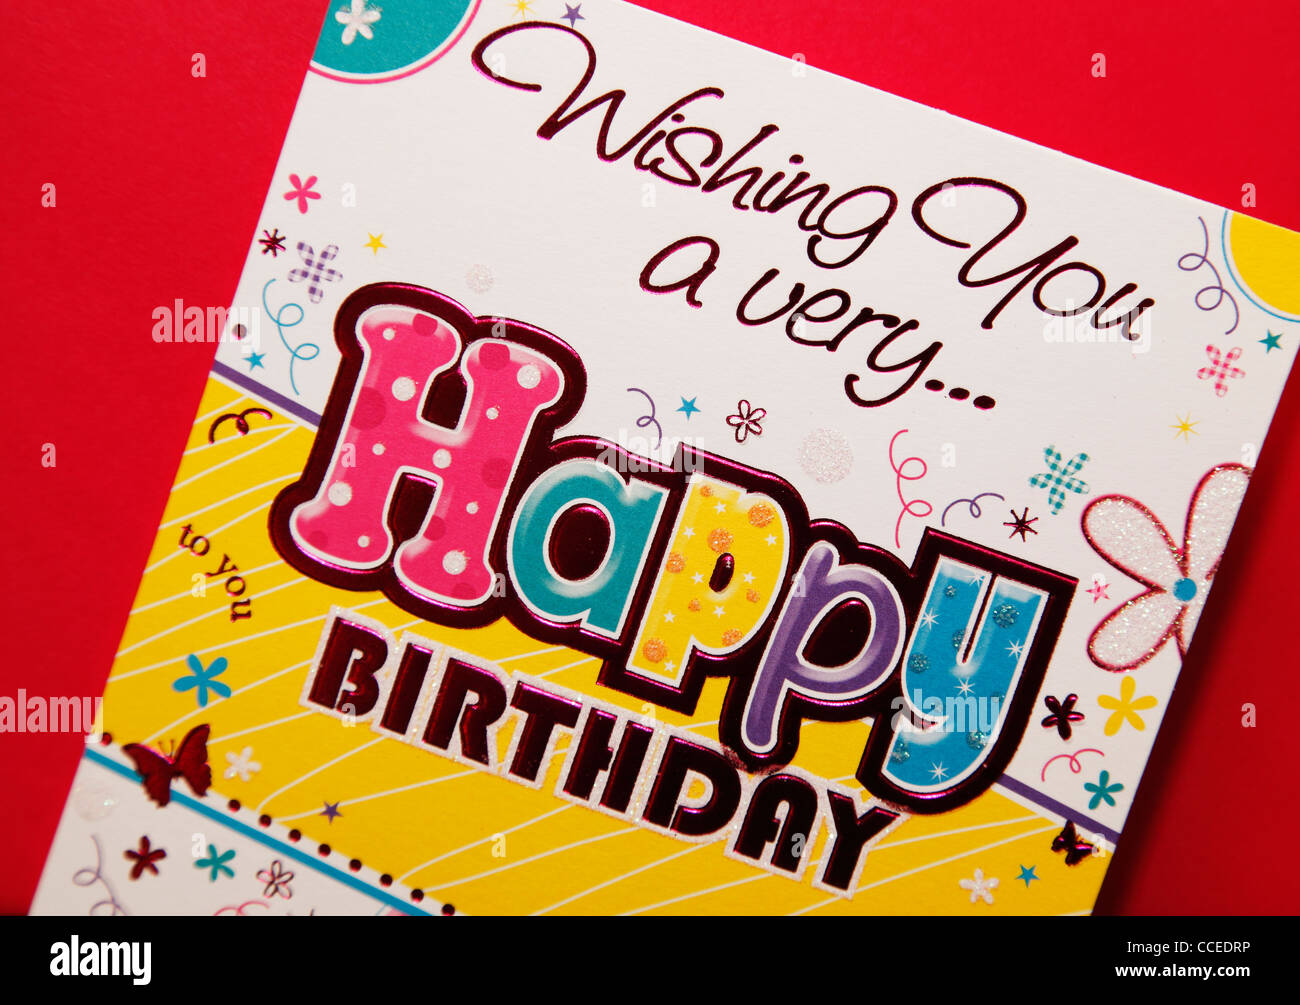 Tarjeta de cumpleaños fotografías e imágenes de alta resolución - Alamy